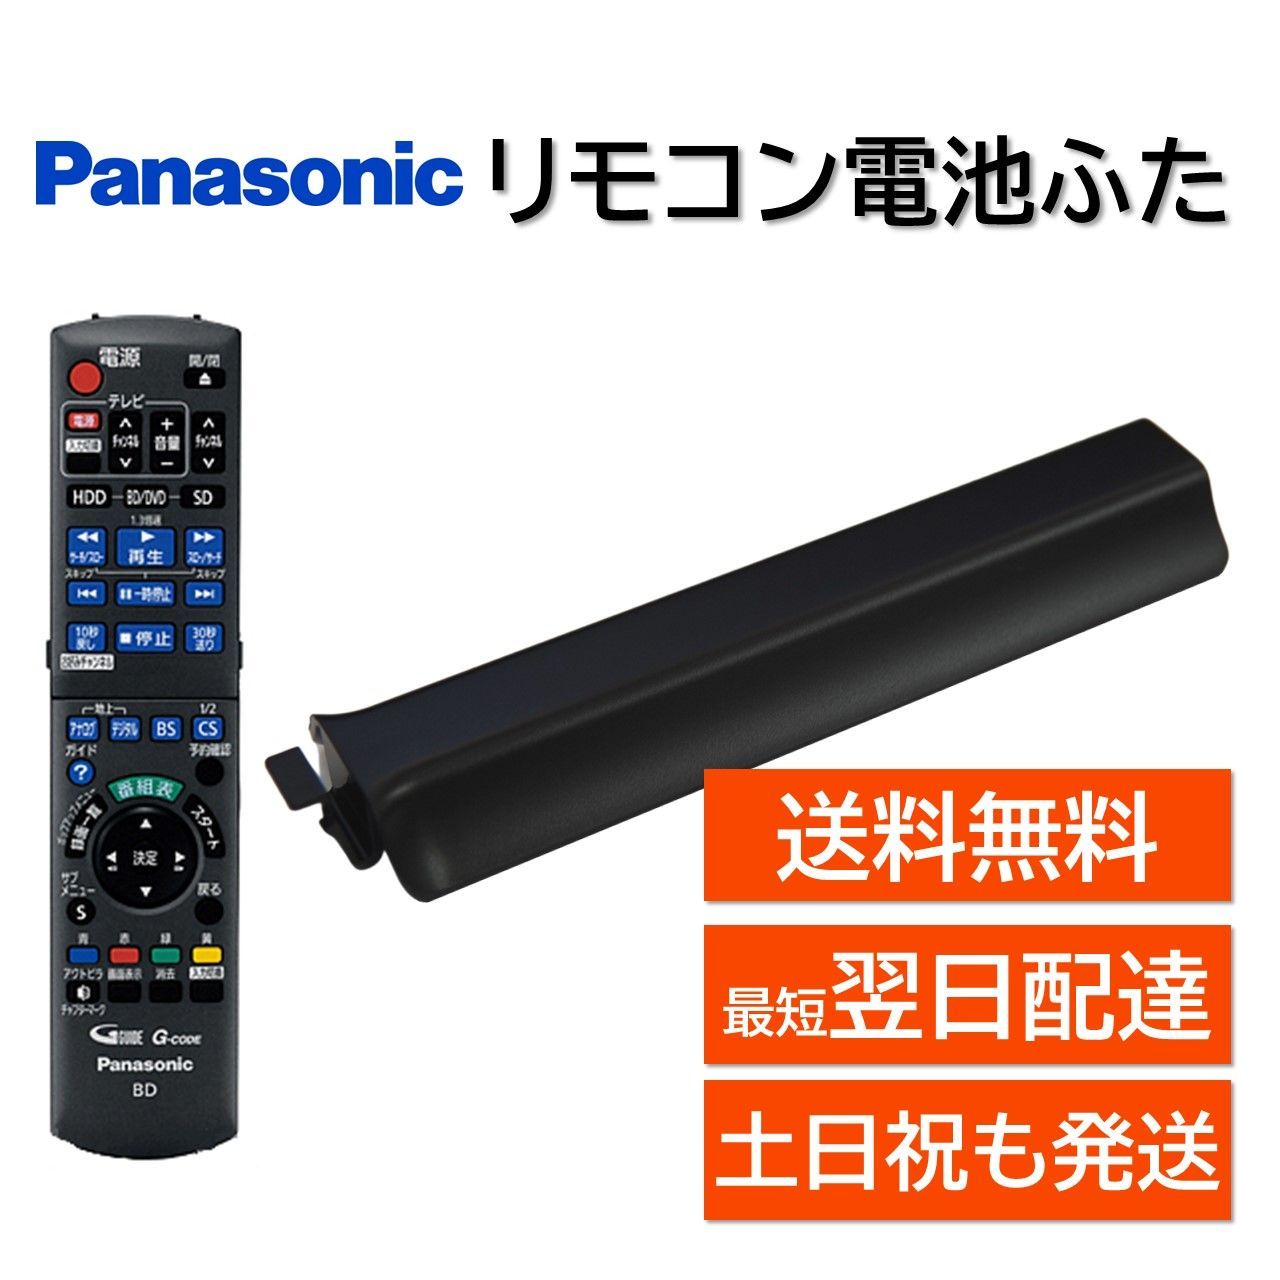 Panasonic純正BD DVDレコーダー用リモコン - その他